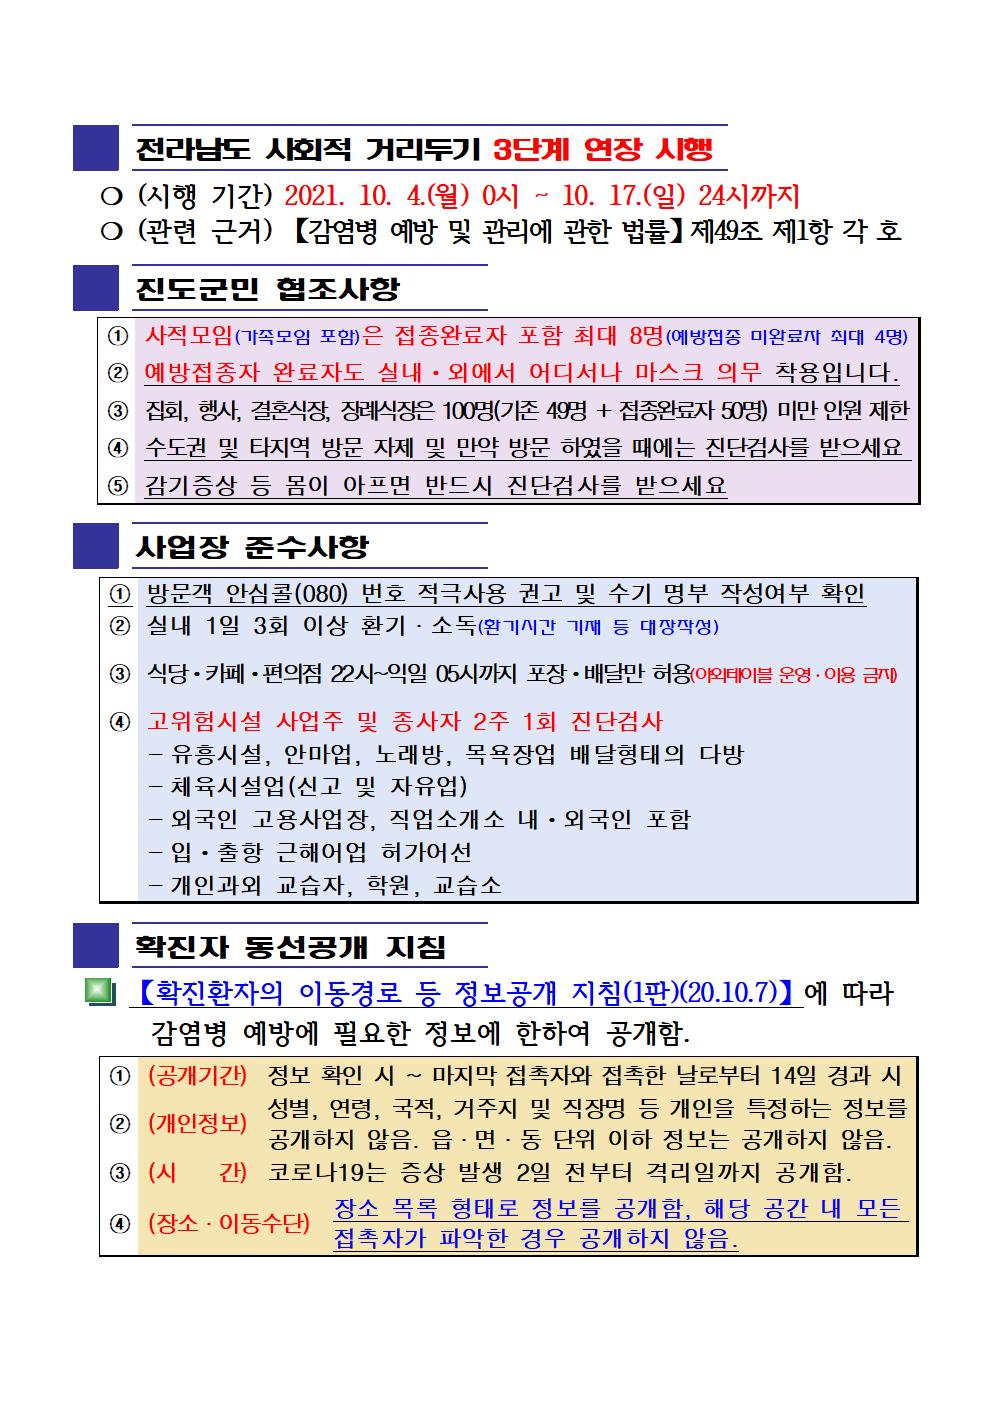 2021년 코로나19 대응 일일상황보고(10월 15일 24시 기준) 첨부#2